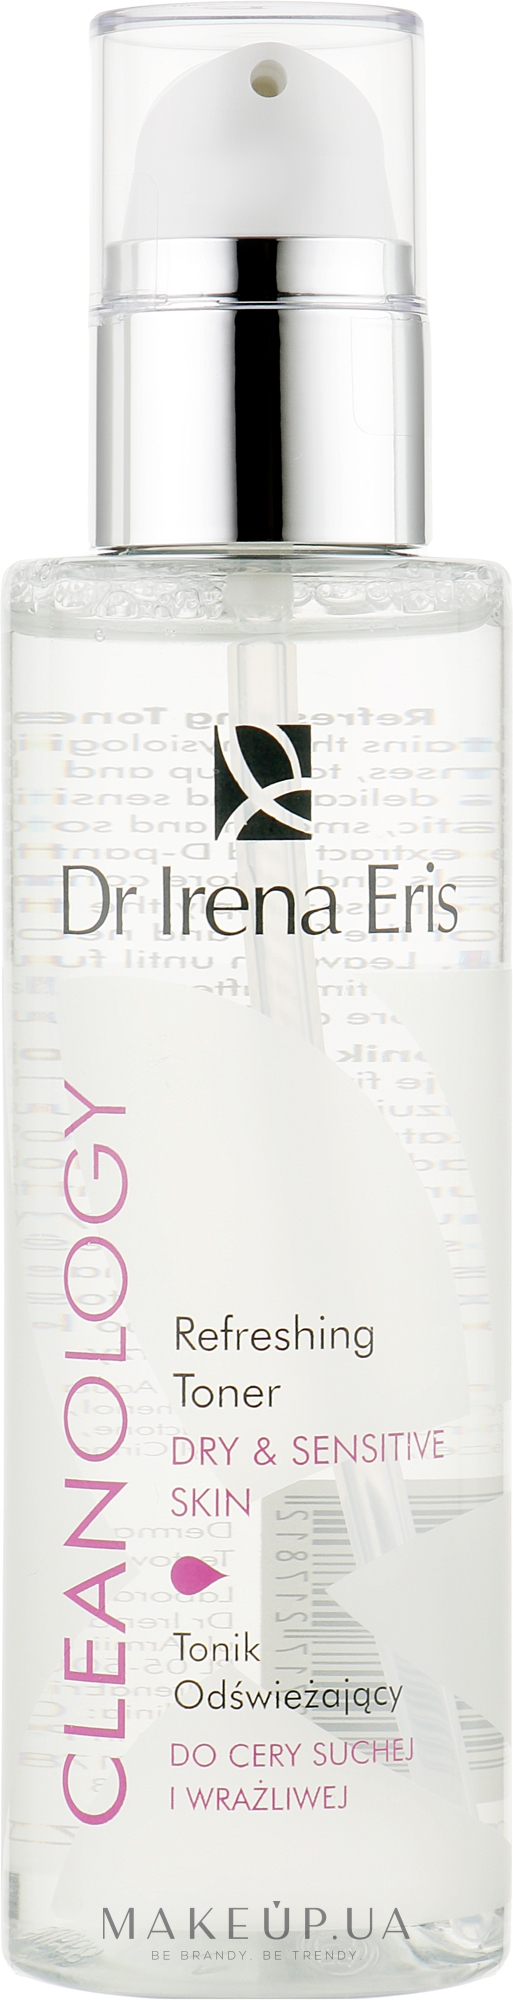 Зволожуючий тонік для сухої і чутливої шкіри - Dr Irena Eris Cleanology Toner for Dry & Sensitive Skin — фото 200ml